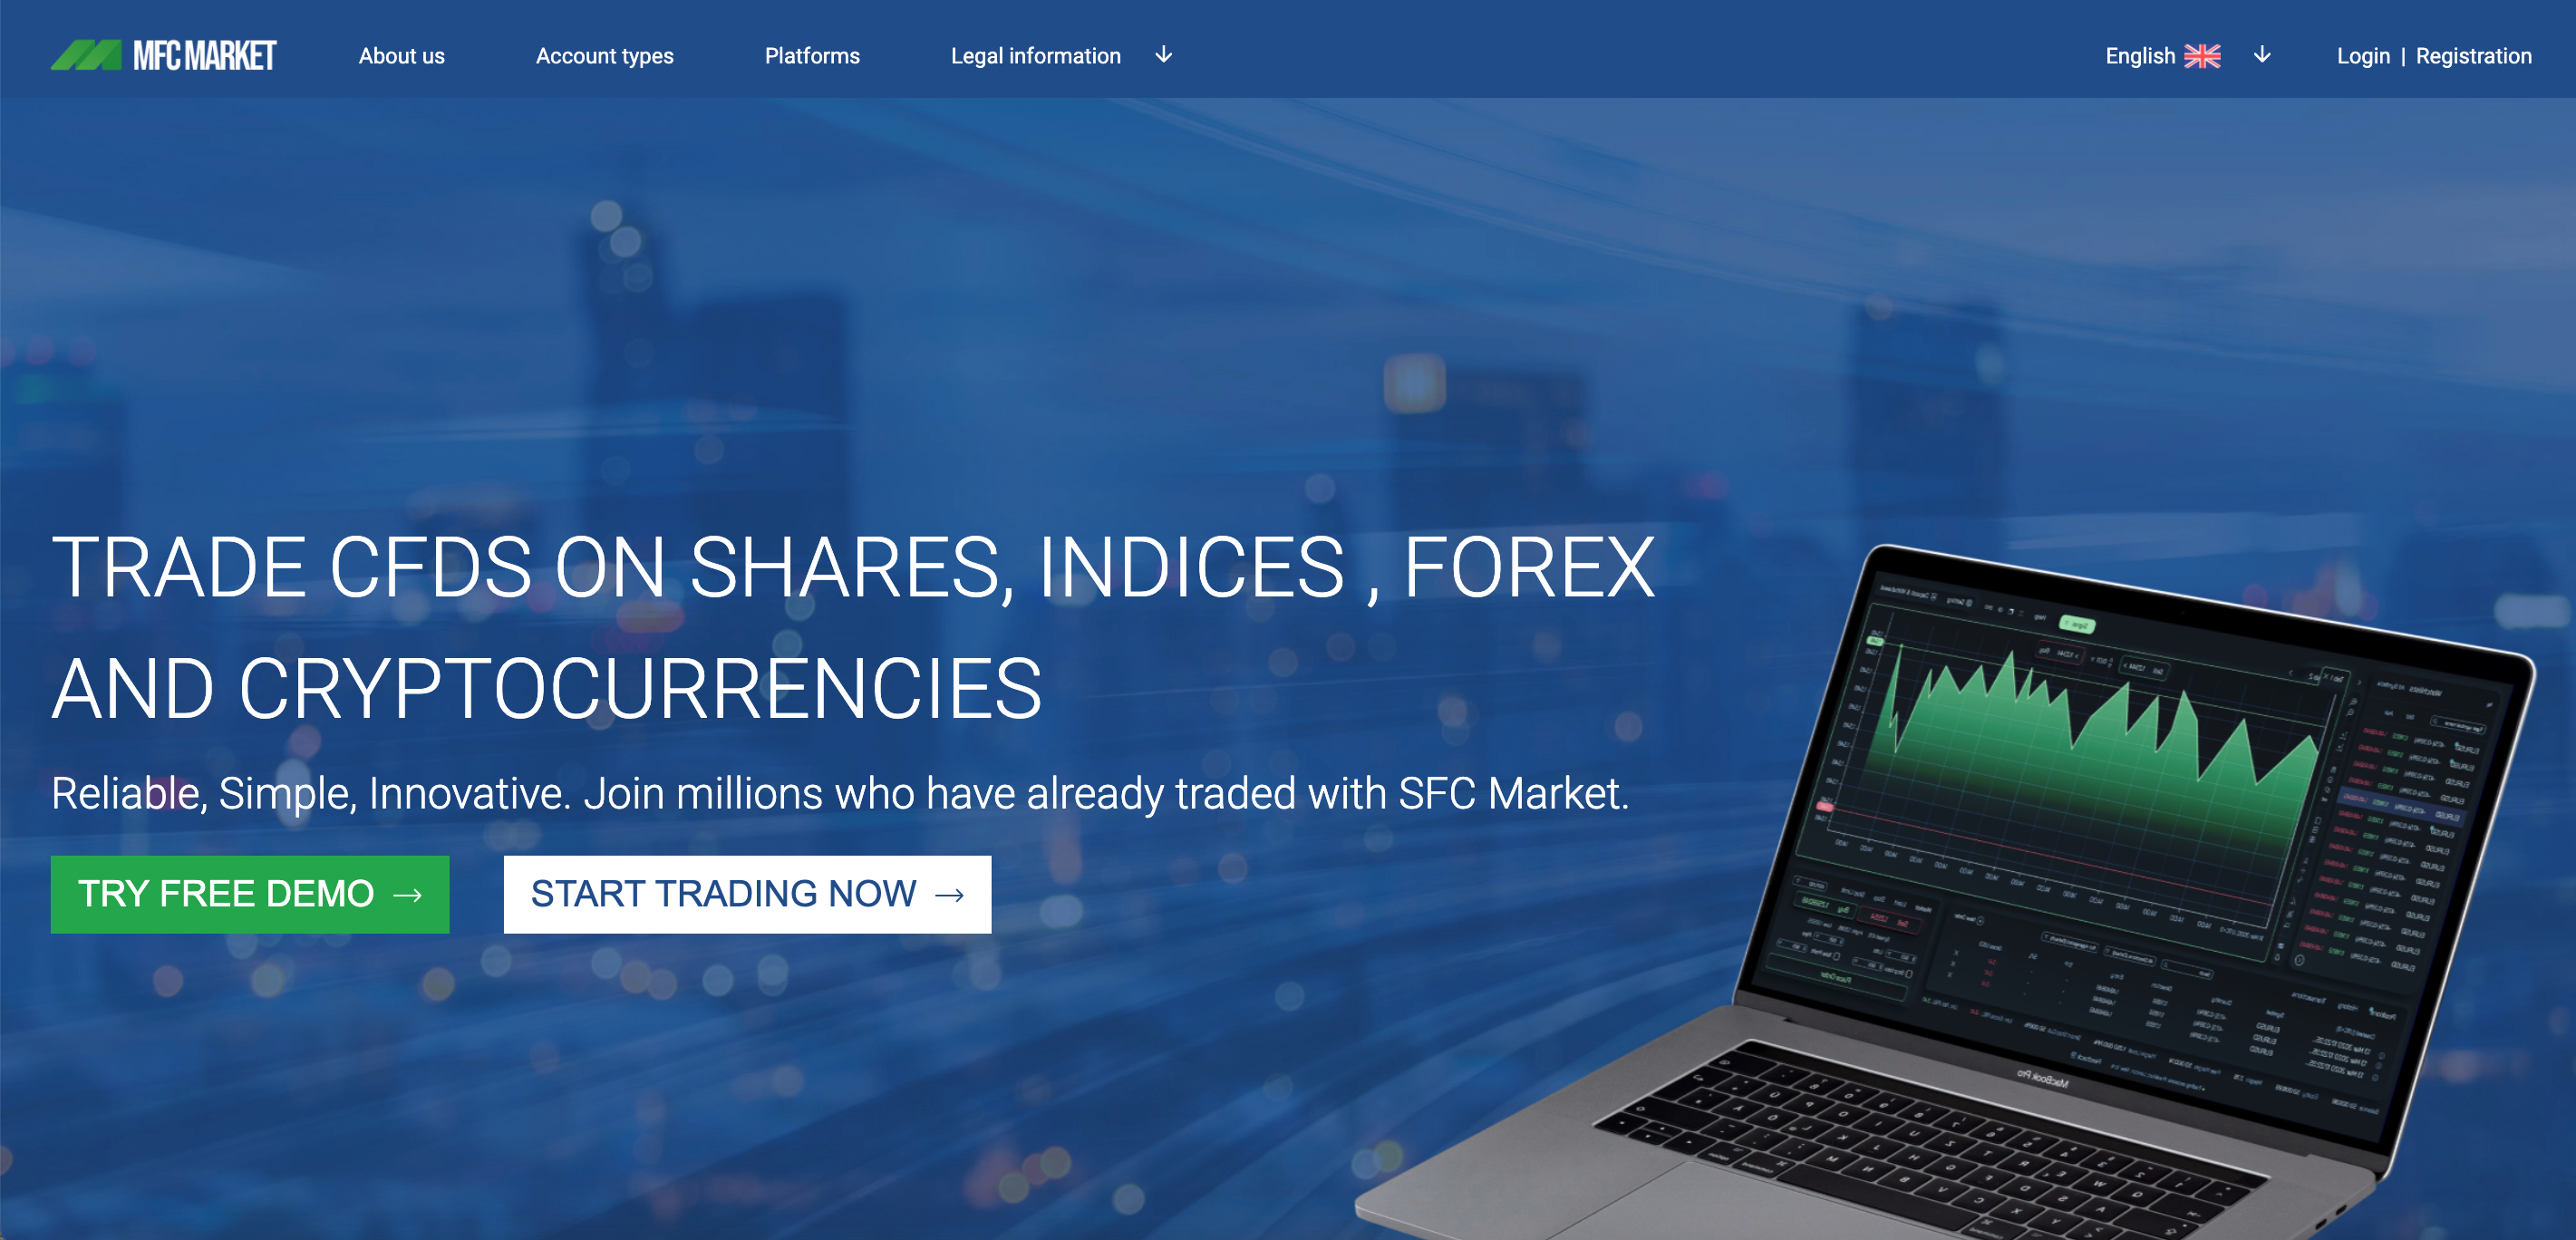 MFC Market website